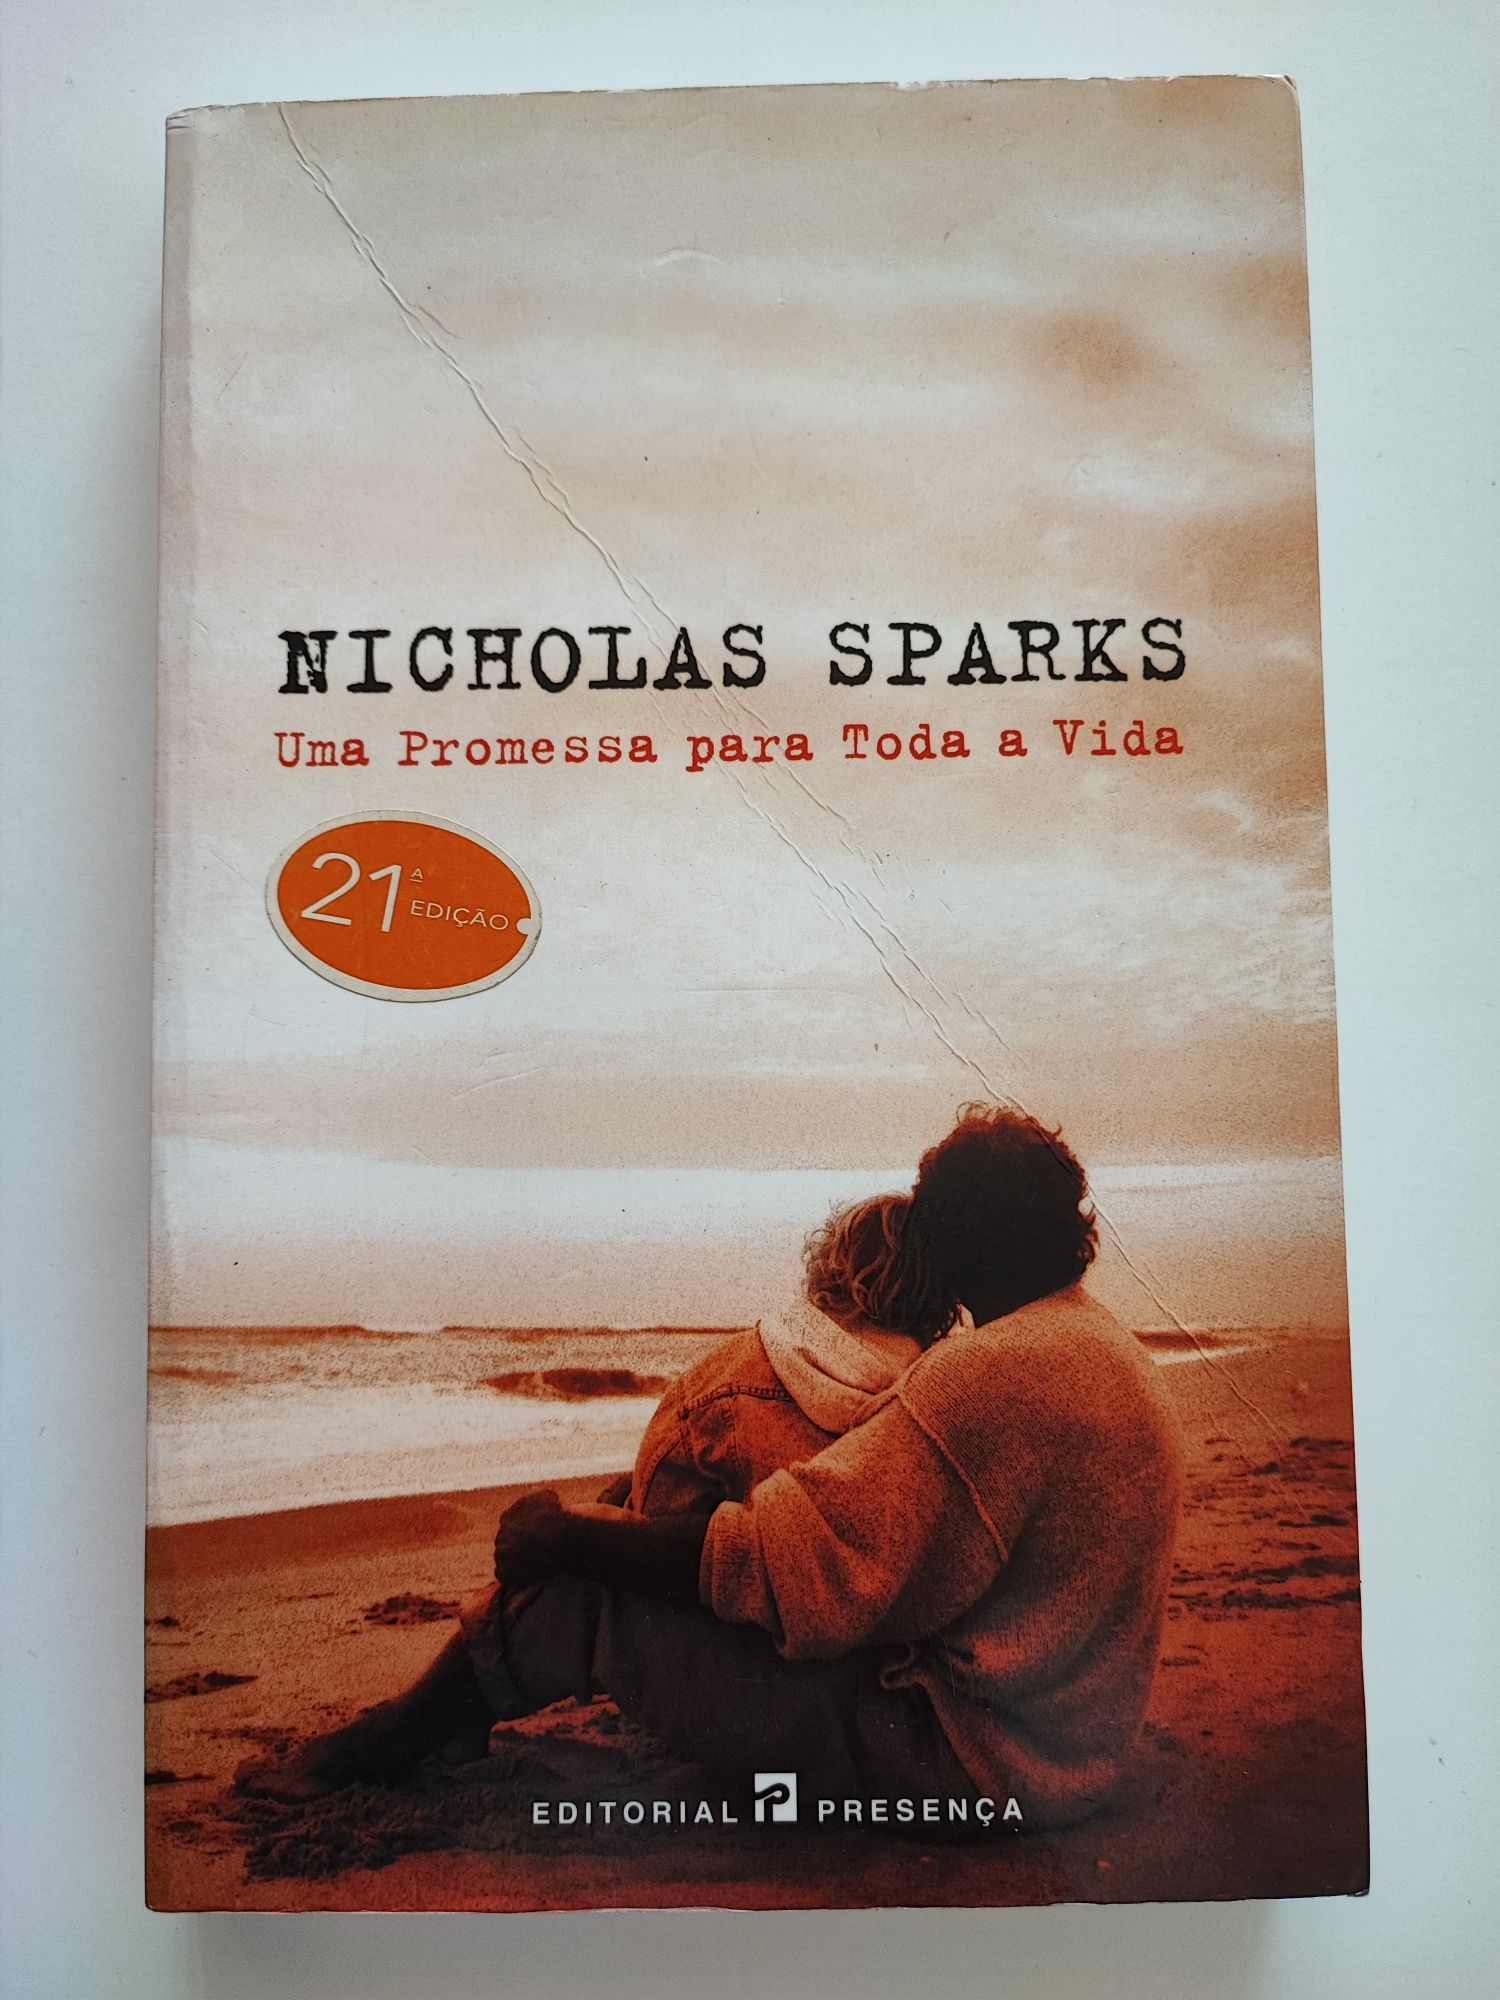 Livro "Uma promessa para toda a vida" Nicholas Sparks